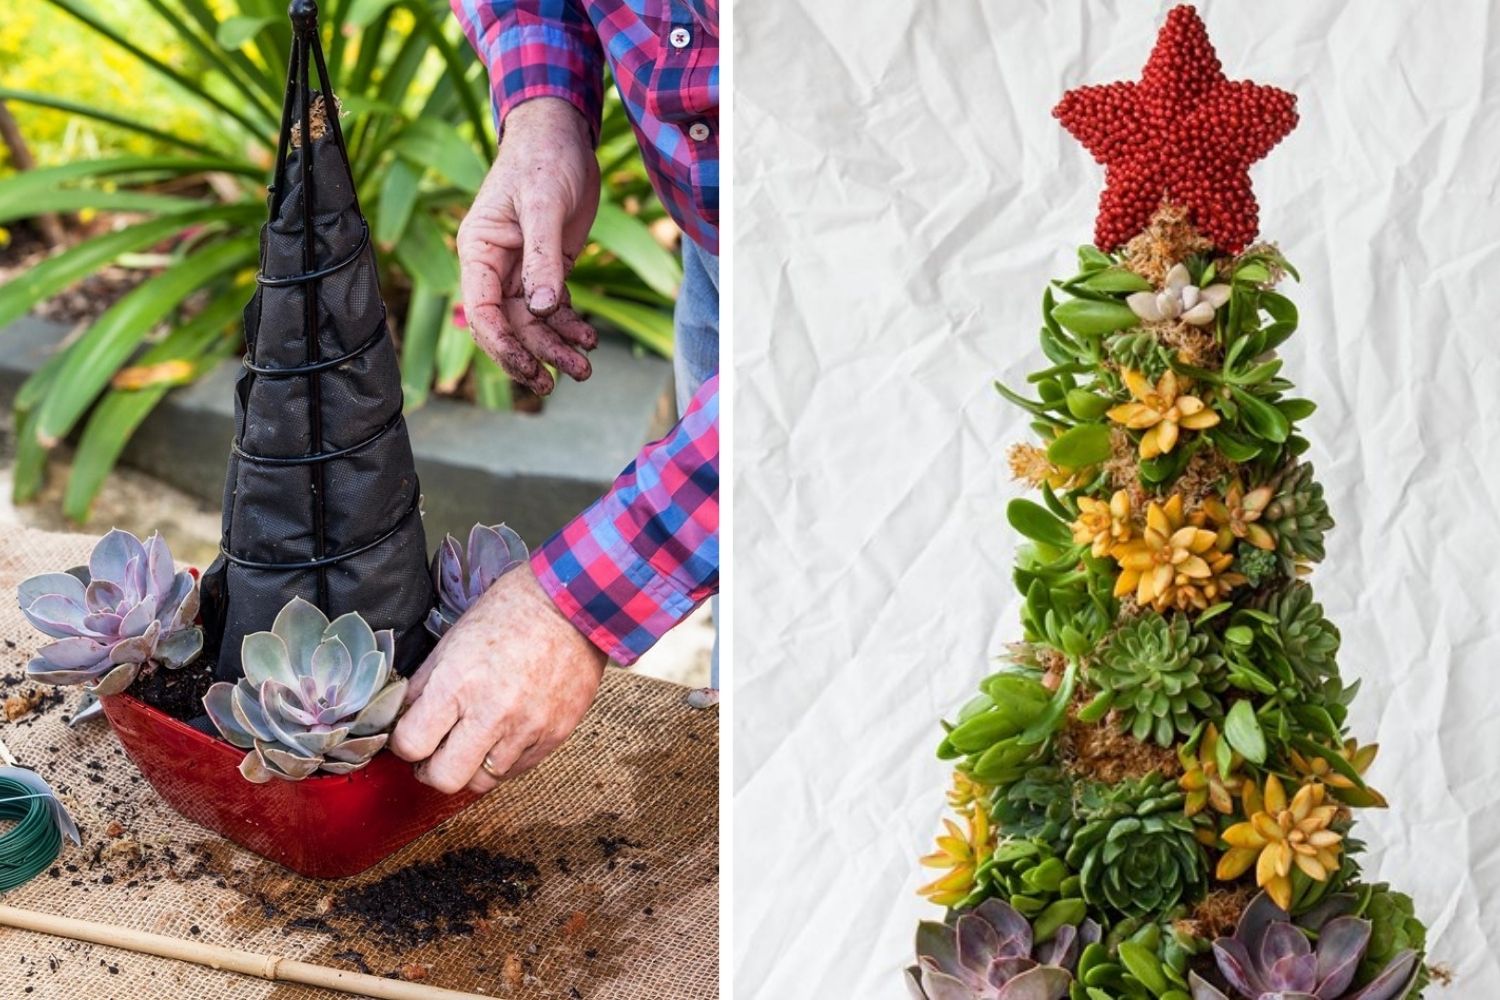 How To Make a Succulent Christmas Tree (Video) - Gluesticks Blog